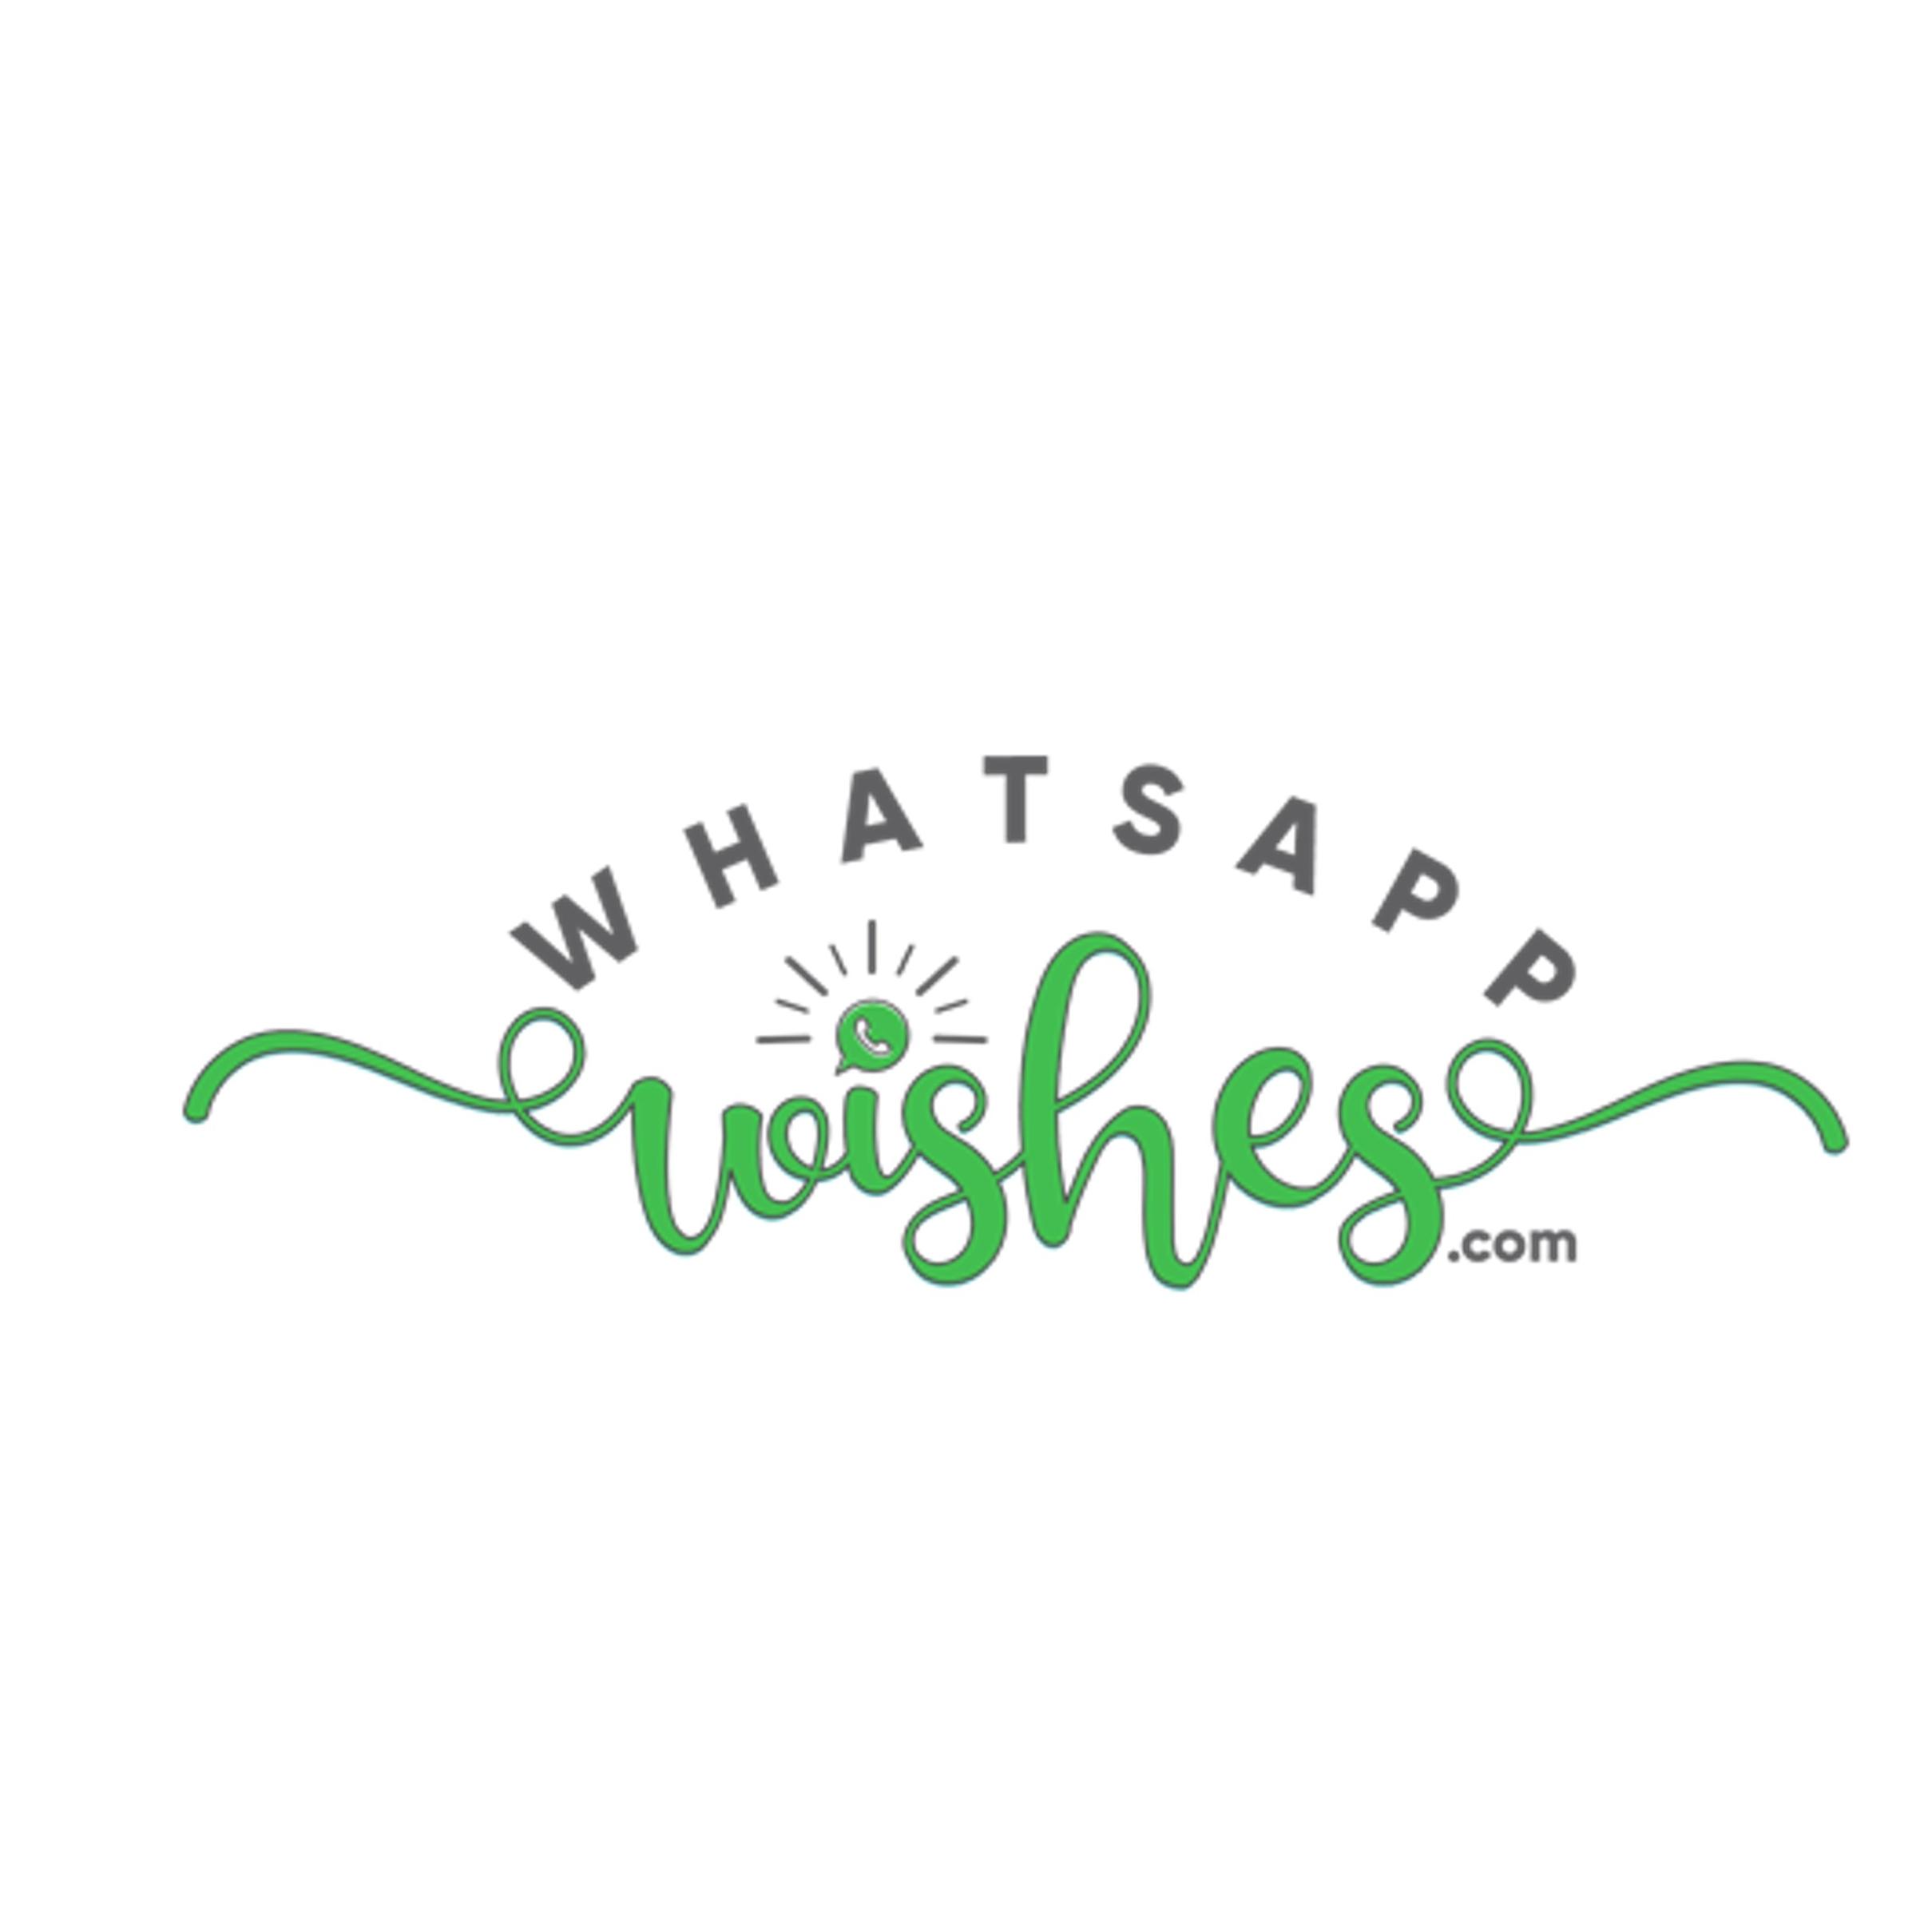 Whatsapp Wishes